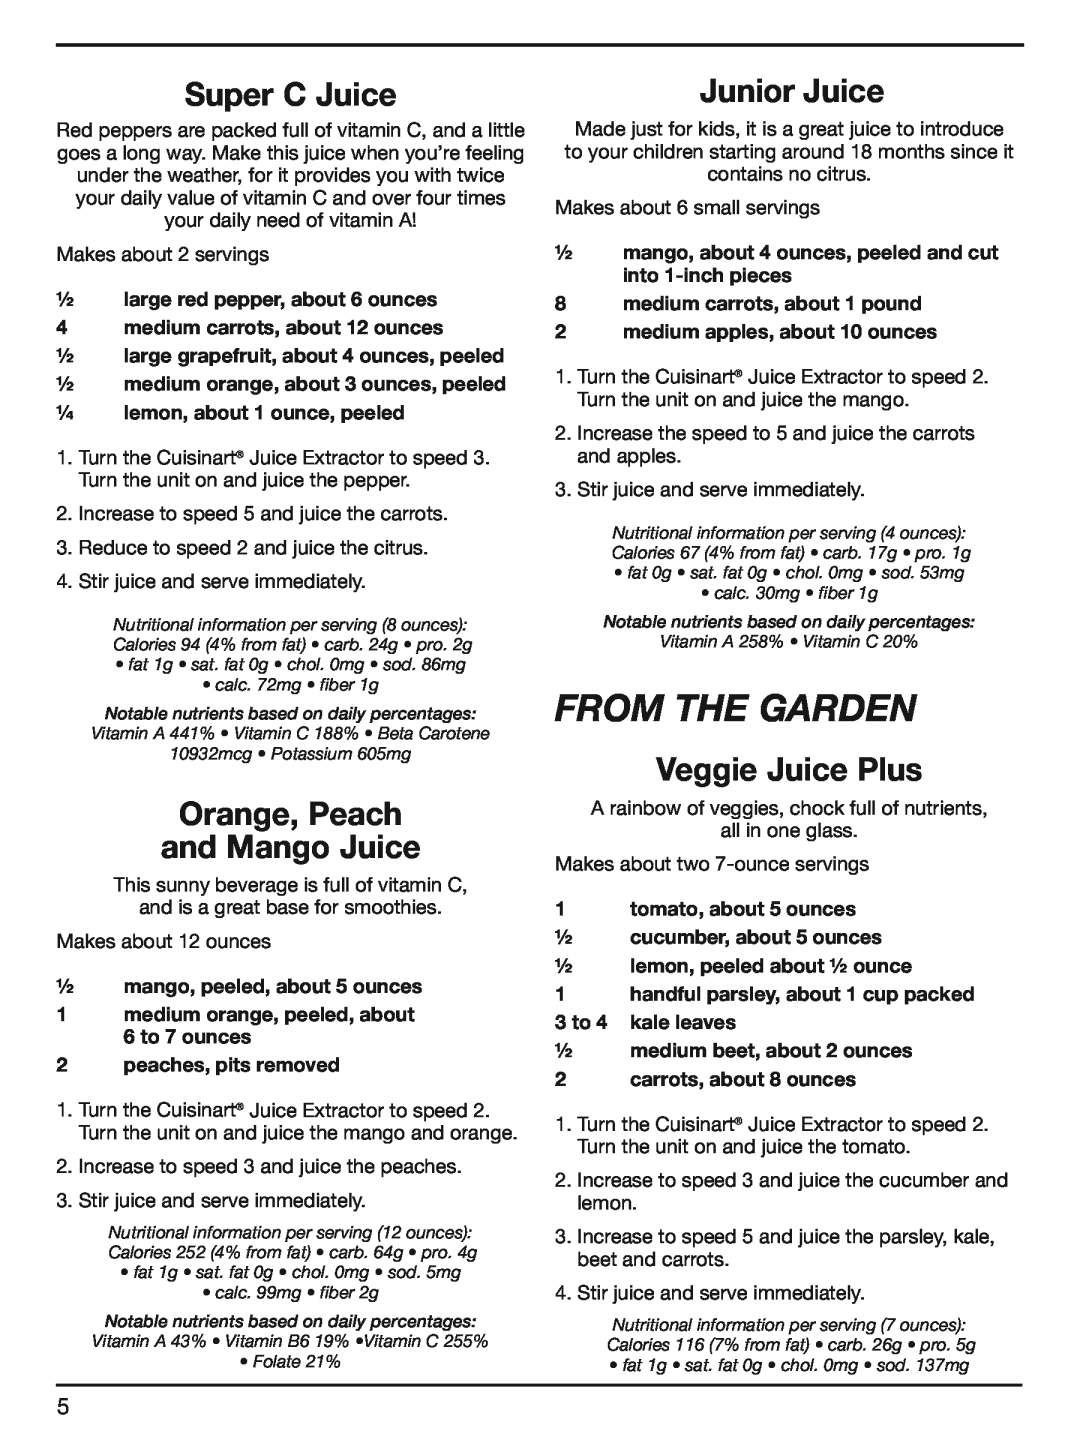 Cuisinart CJE-1000 manual from the garden, Super C Juice, Orange, Peach and Mango Juice, Junior Juice, Veggie Juice Plus 